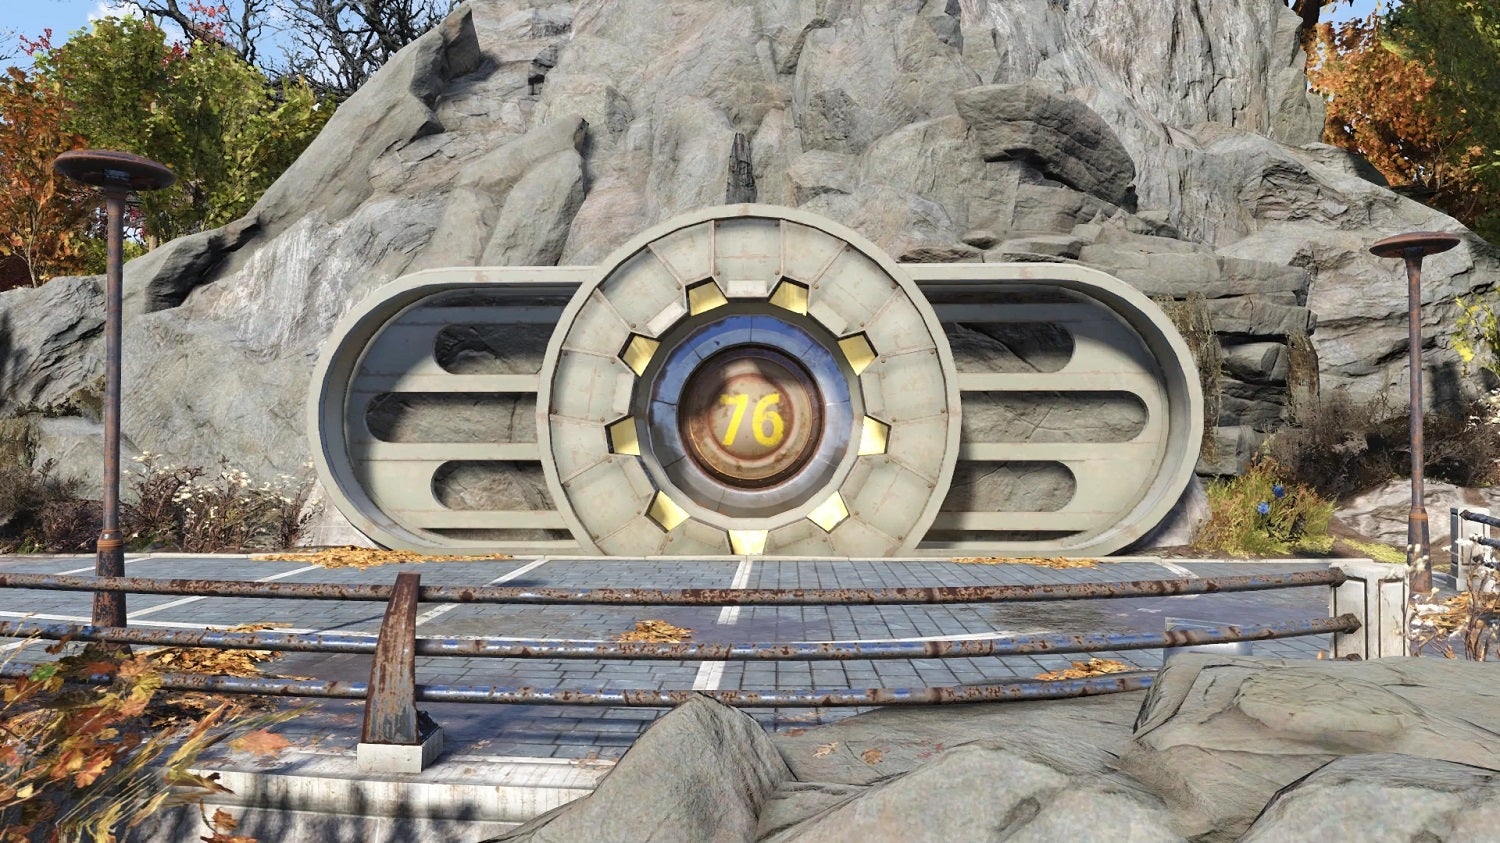 Screen z gry Fallout 76, prezentujący wejście do schronu 76